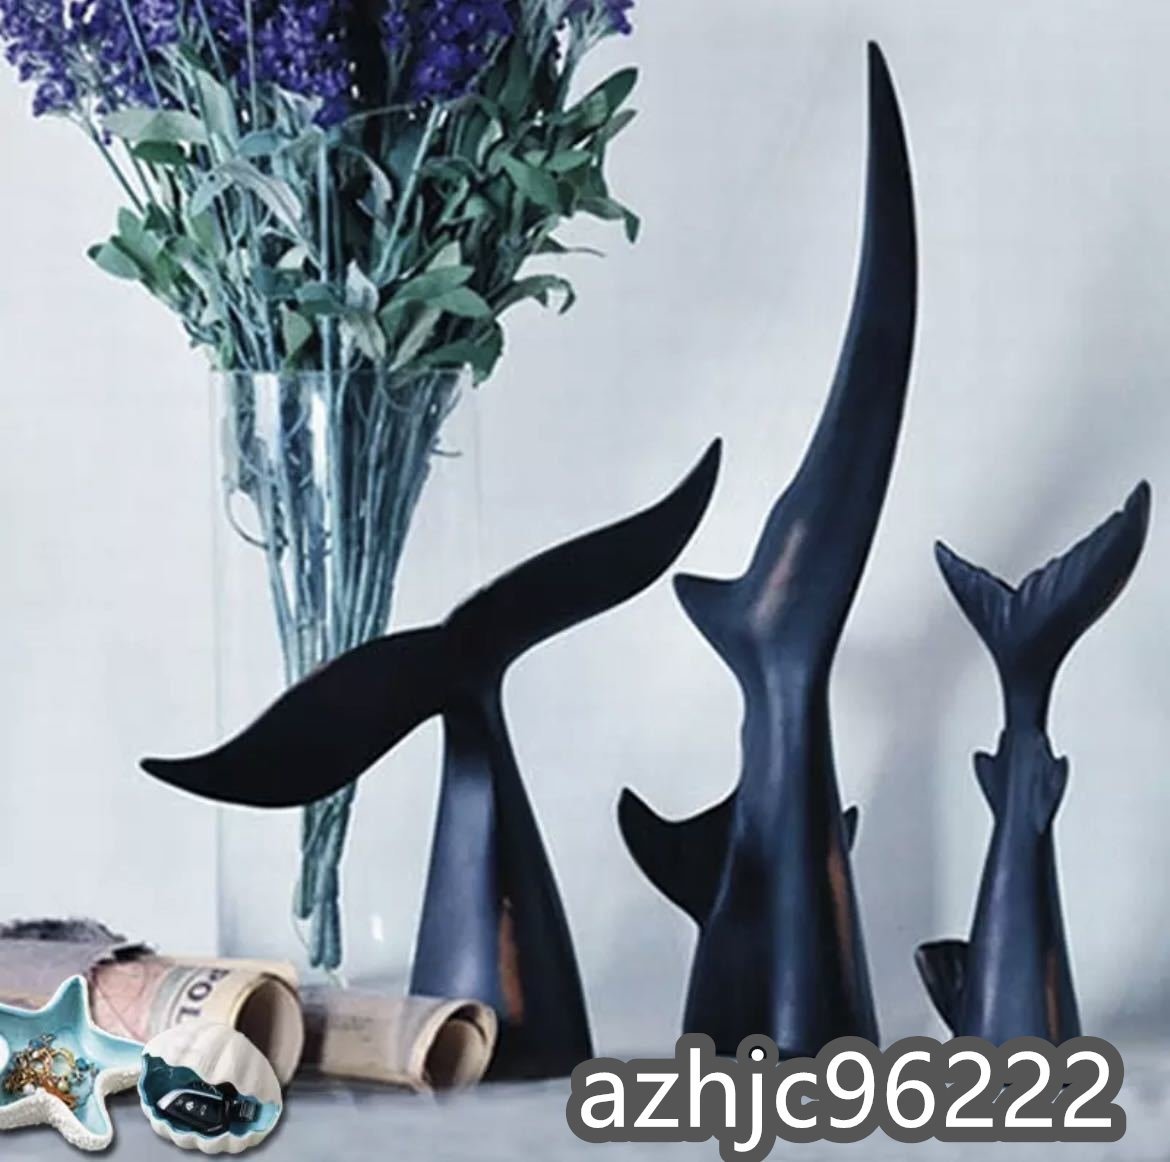 フィッシュ クジラ 鯨 魚 鮫 サメ フィギュア オーナメント クジラの尾 置物 インテリア 装飾 オブジェ アート 海 樹脂 雑貨 小物